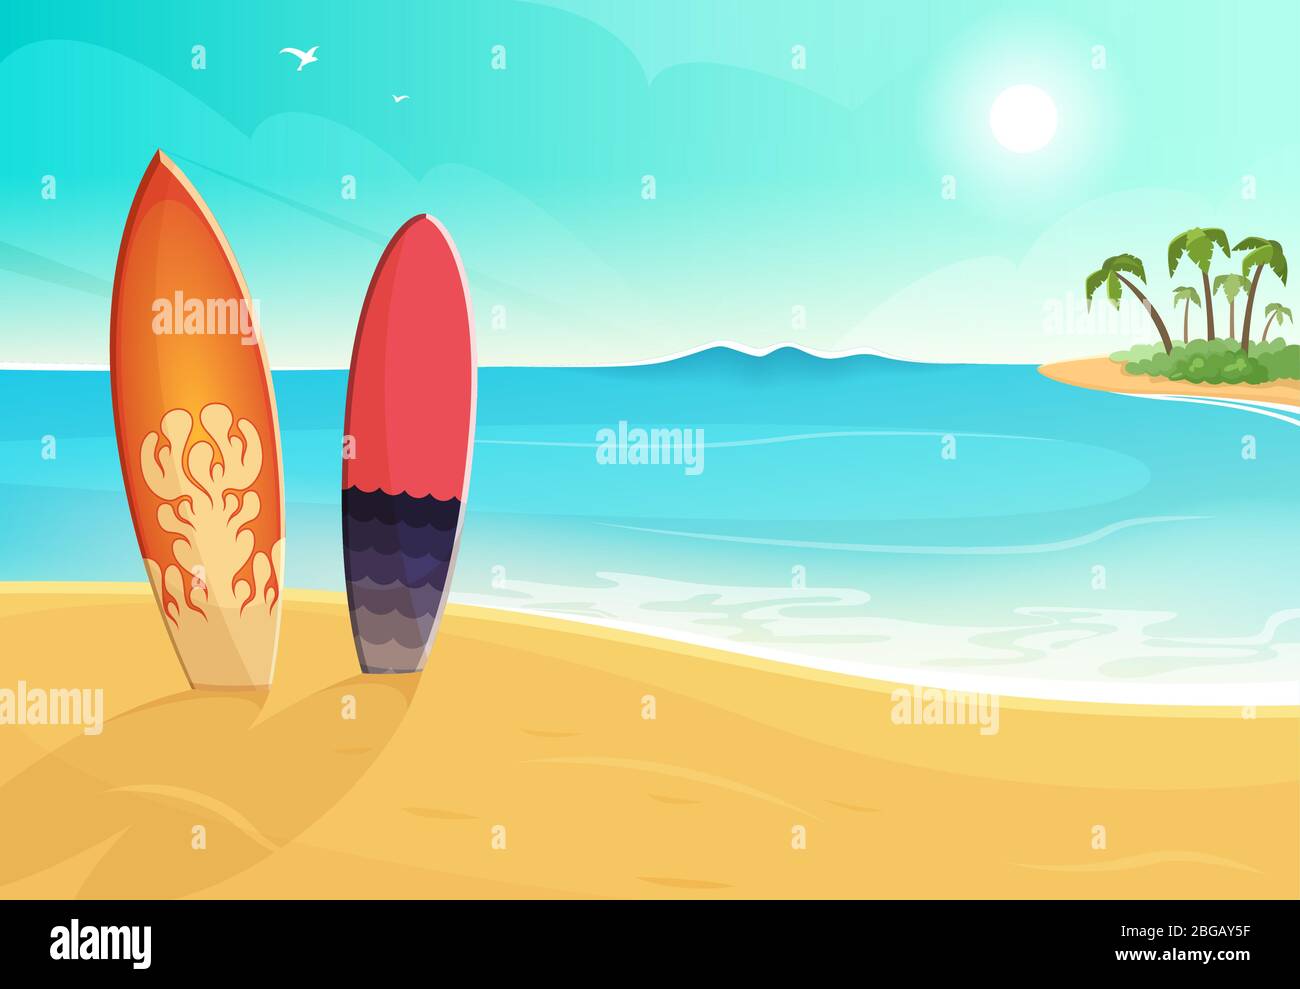 Surfbretter in verschiedenen Farben. Meer und Sandstrand. Vektor Sommer Hintergrund Illustration Stock Vektor